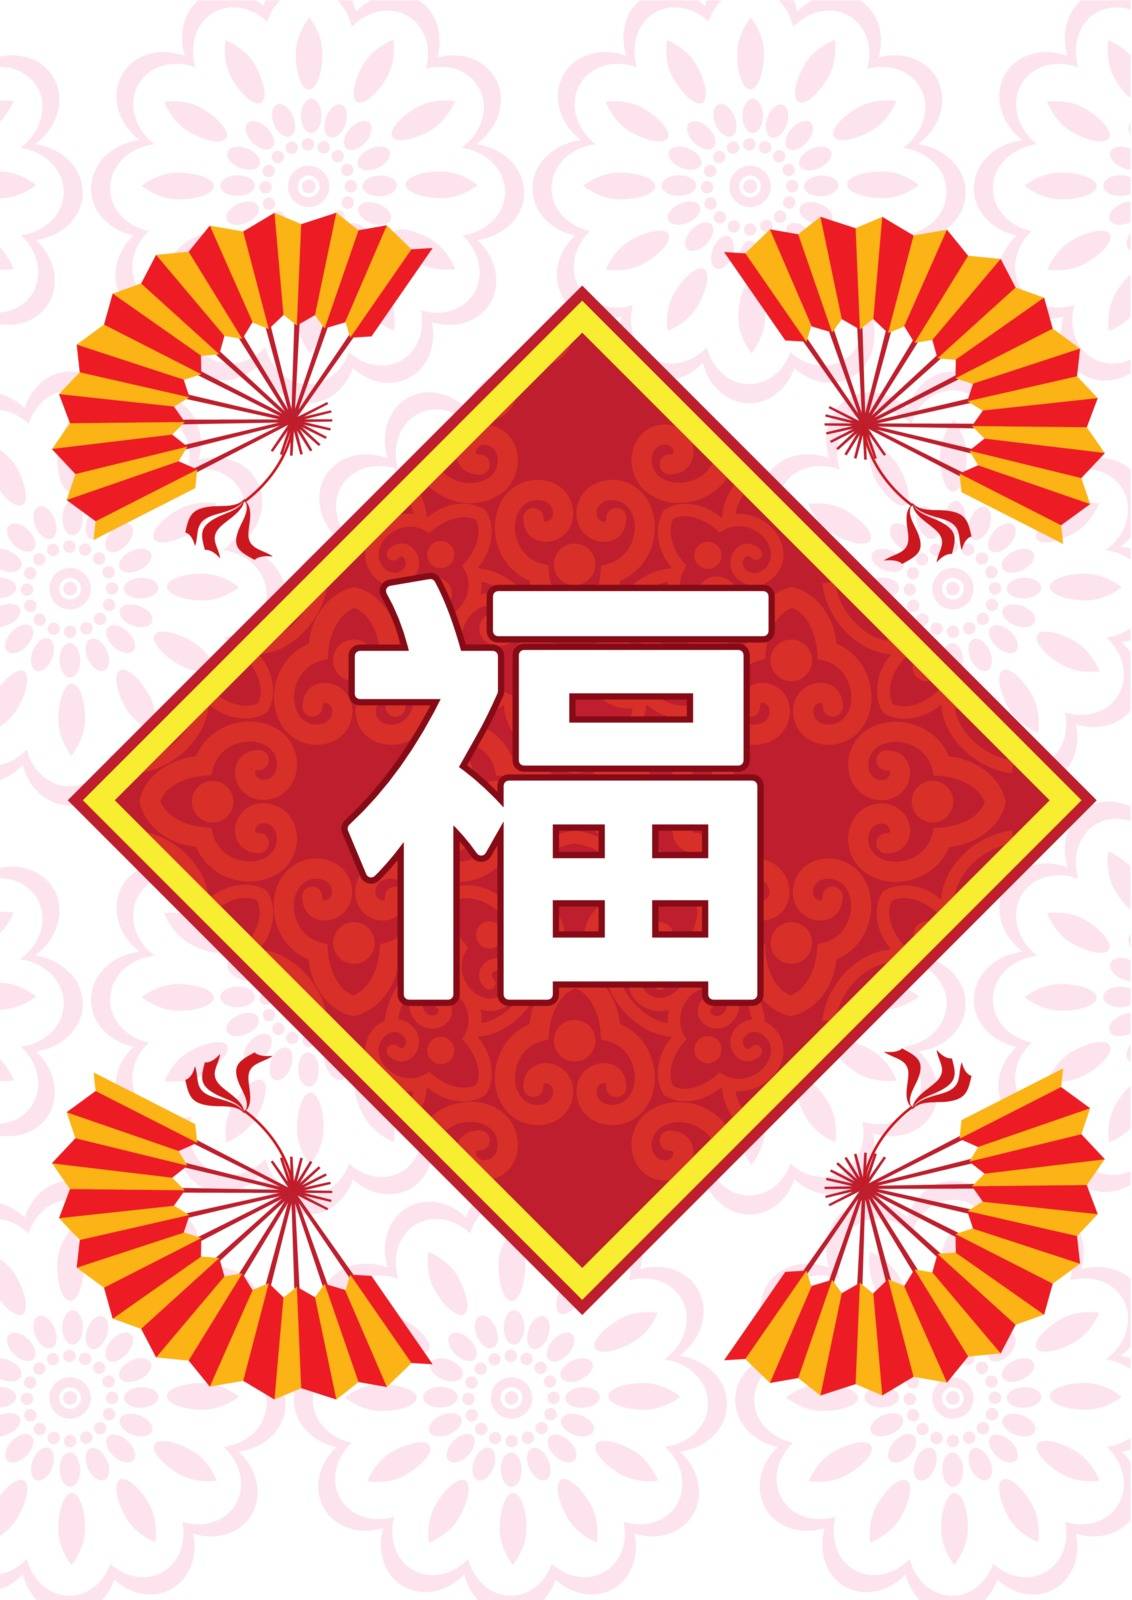 Classic Oriental Pattern by jenkoh